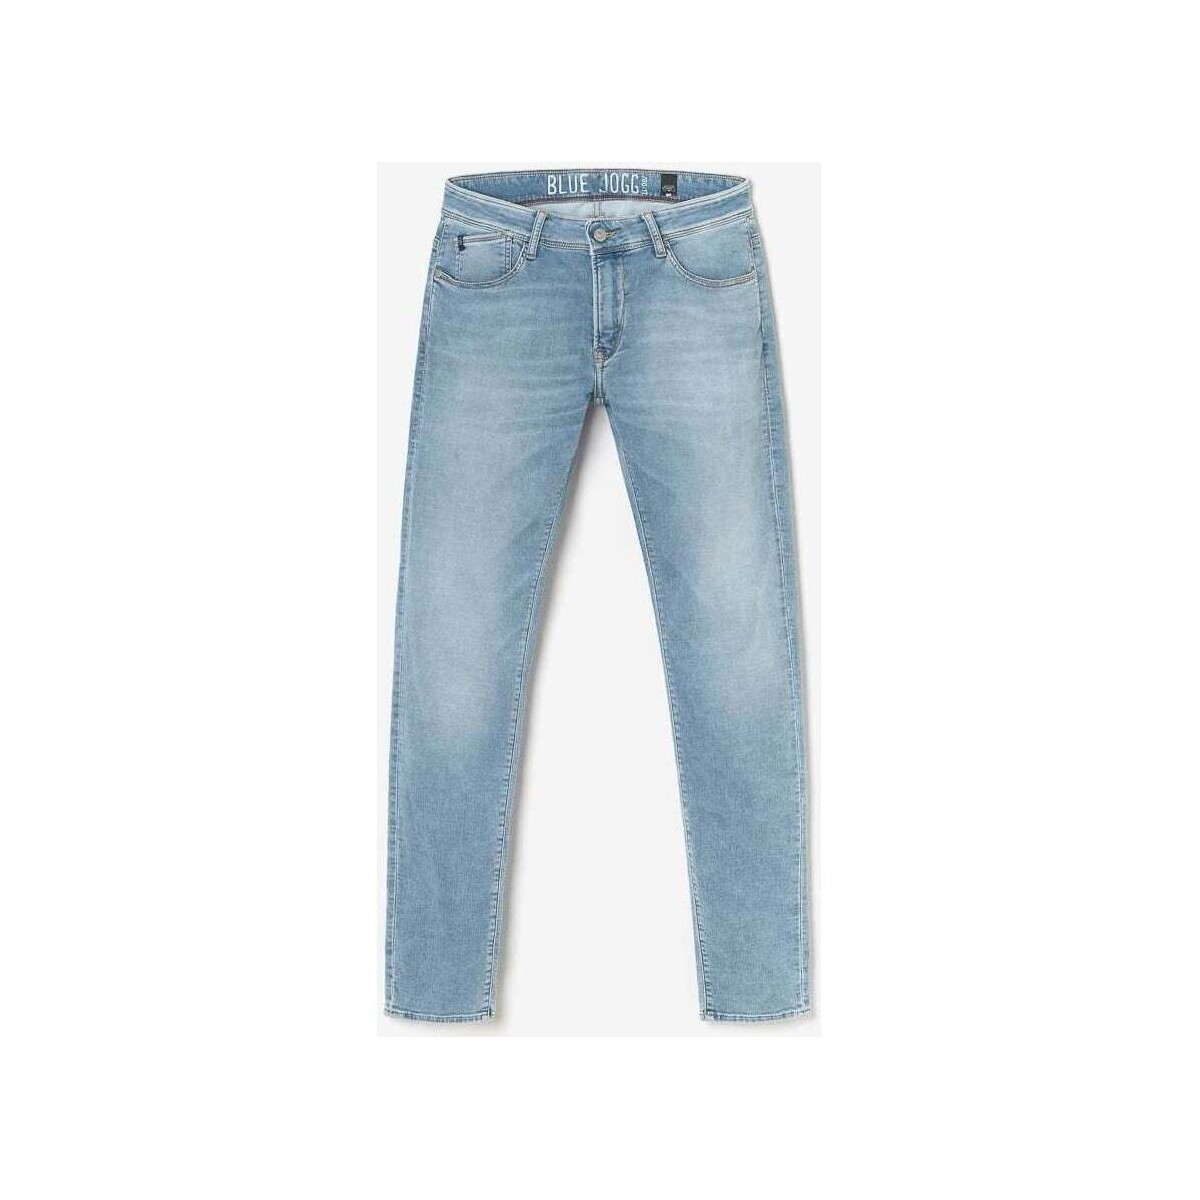 Textil Homem Calças de ganga Le Temps des Cerises Jeans ajusté muito elástica 700/11, comprimento 34 Azul